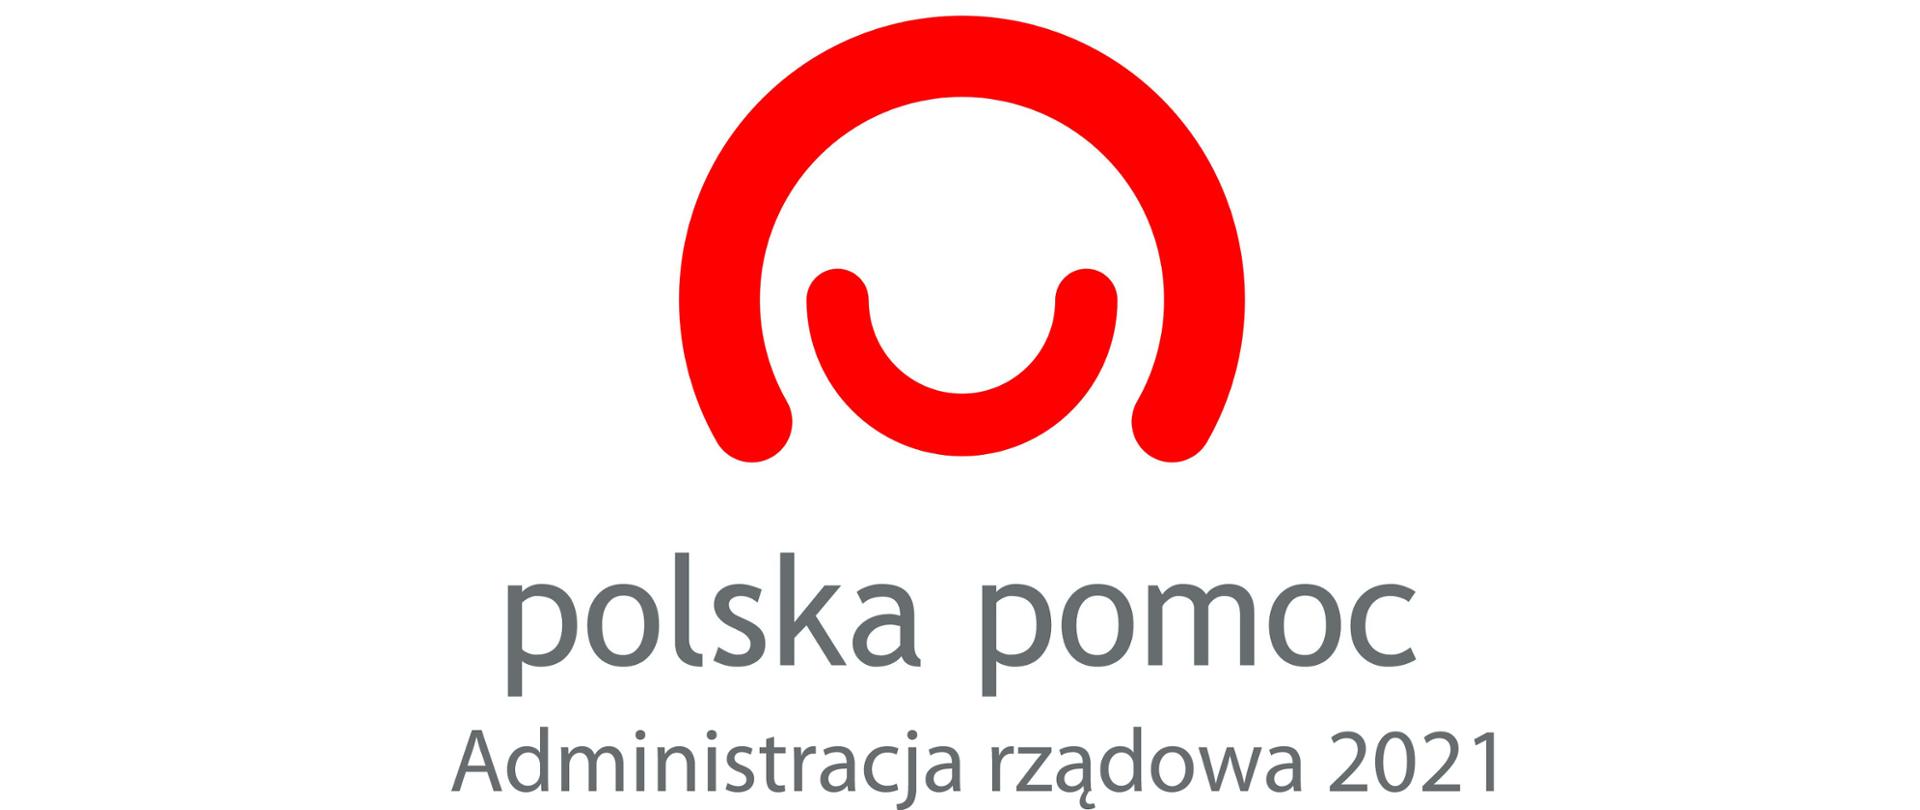 logotyp Polskiej pomocy z napisem Polska pomoc - administracja rządowa 2021